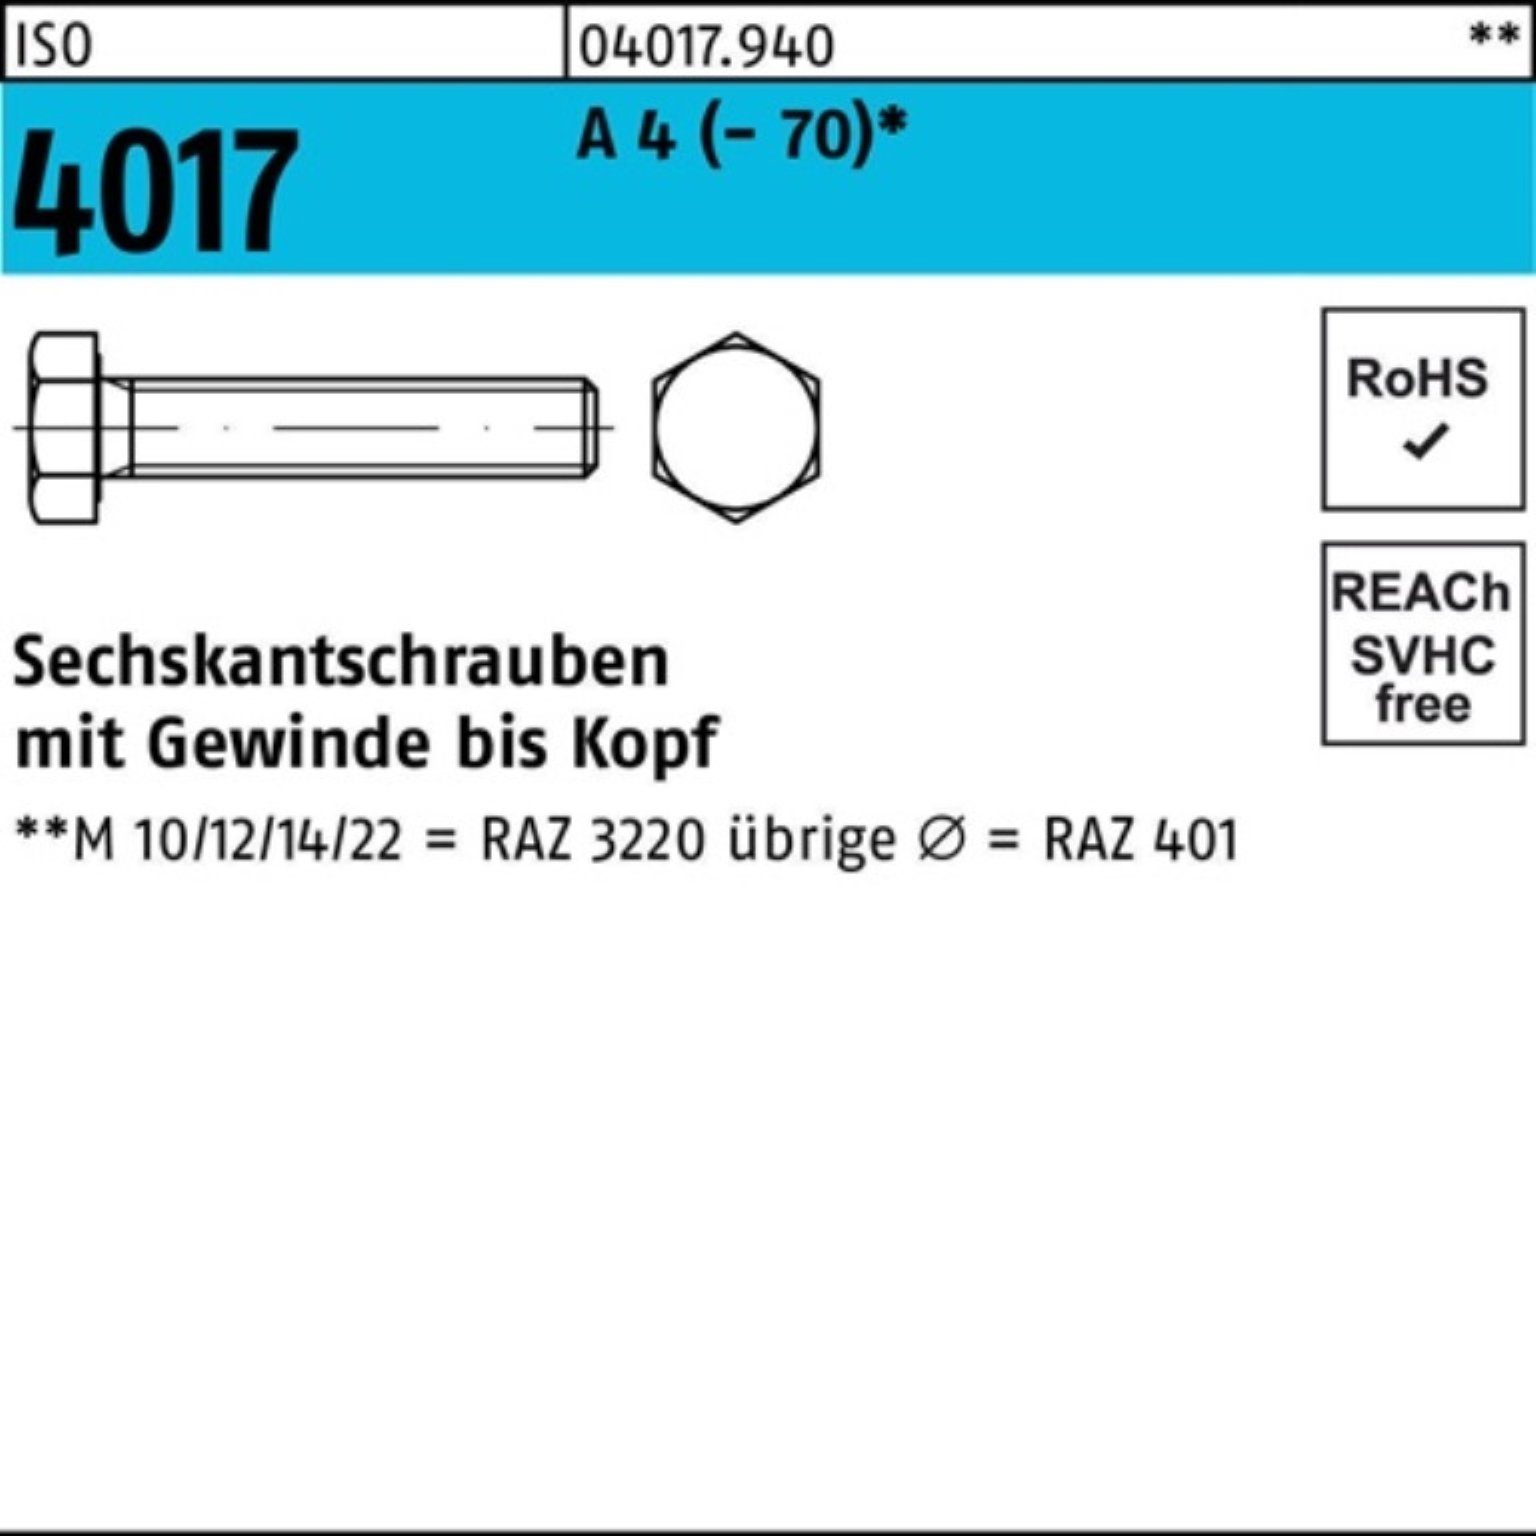 Bufab Sechskantschraube 100er Pack Sechskantschraube ISO 4017 VG M24x 55 A 4 (70) 1 Stück I